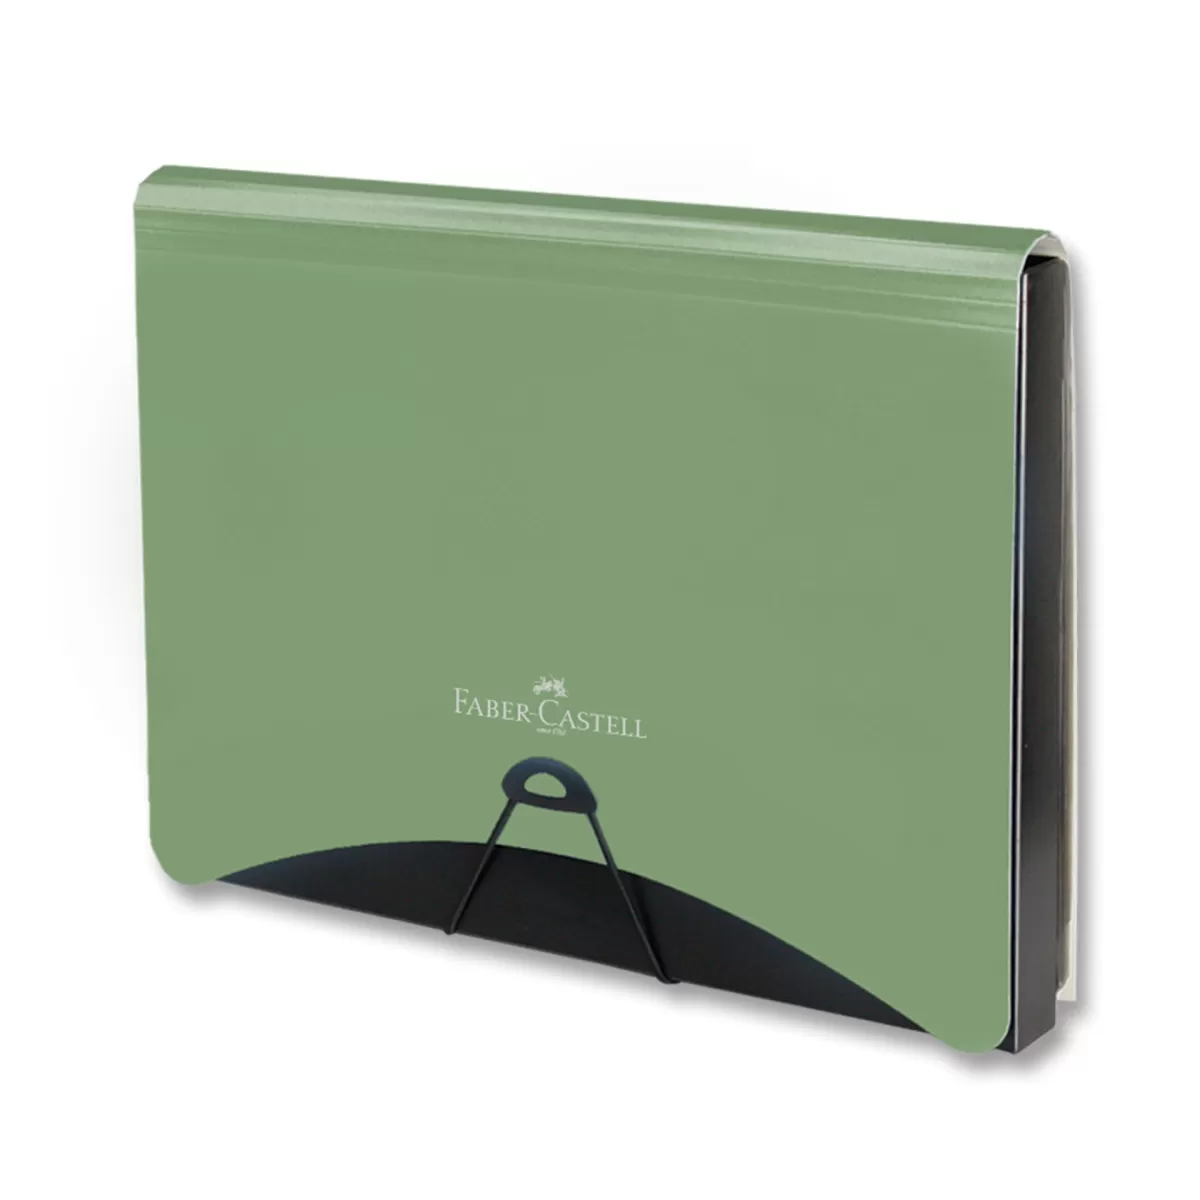 Faber-Castell Папка, PP, със 7 разделителя, с джоб за документи, зелена